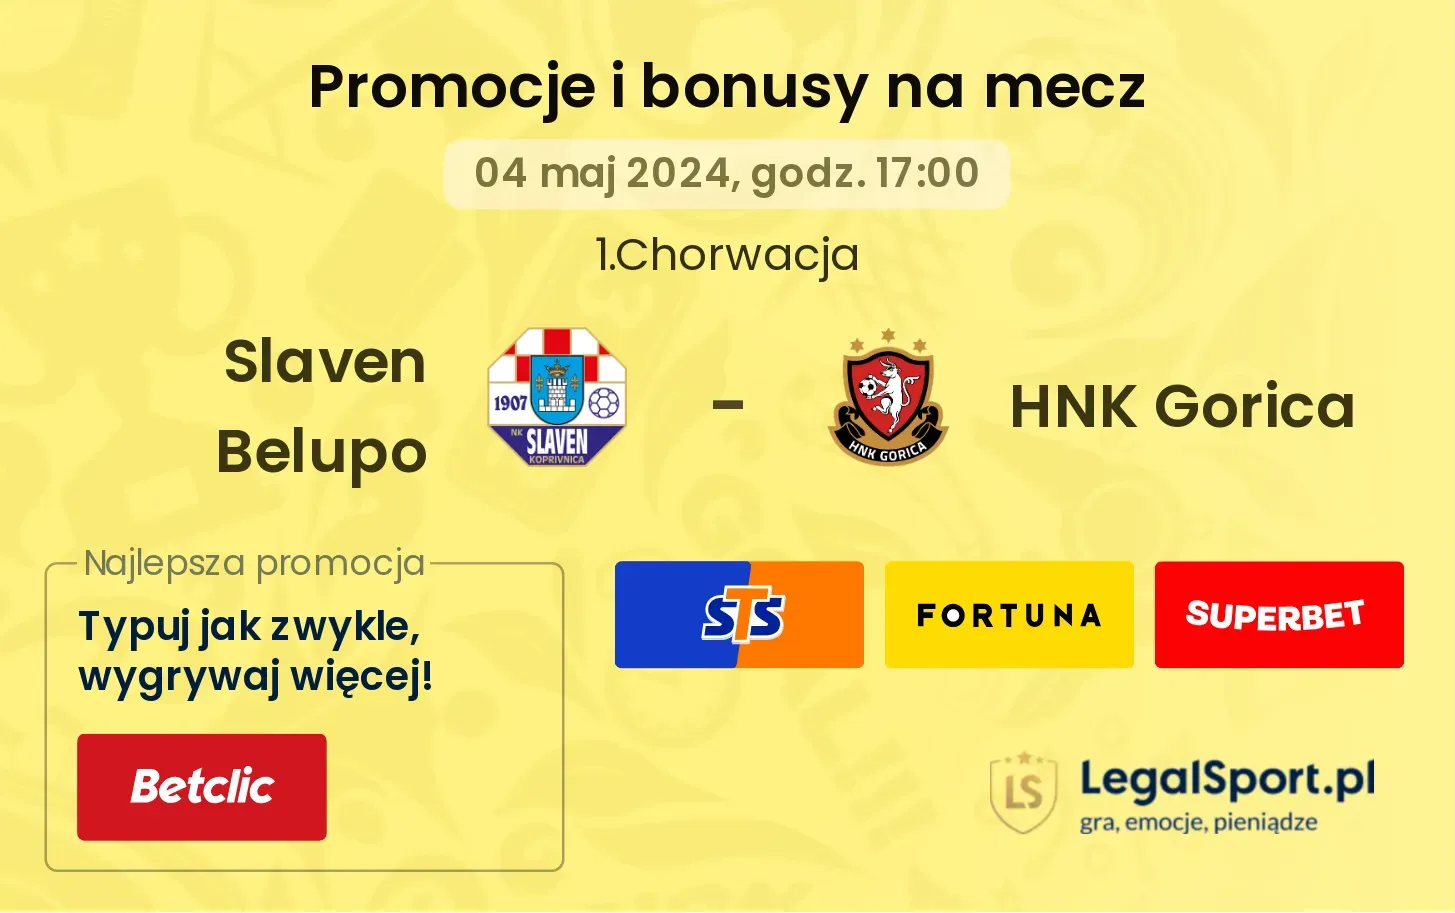 Slaven Belupo - HNK Gorica promocje bonusy na mecz